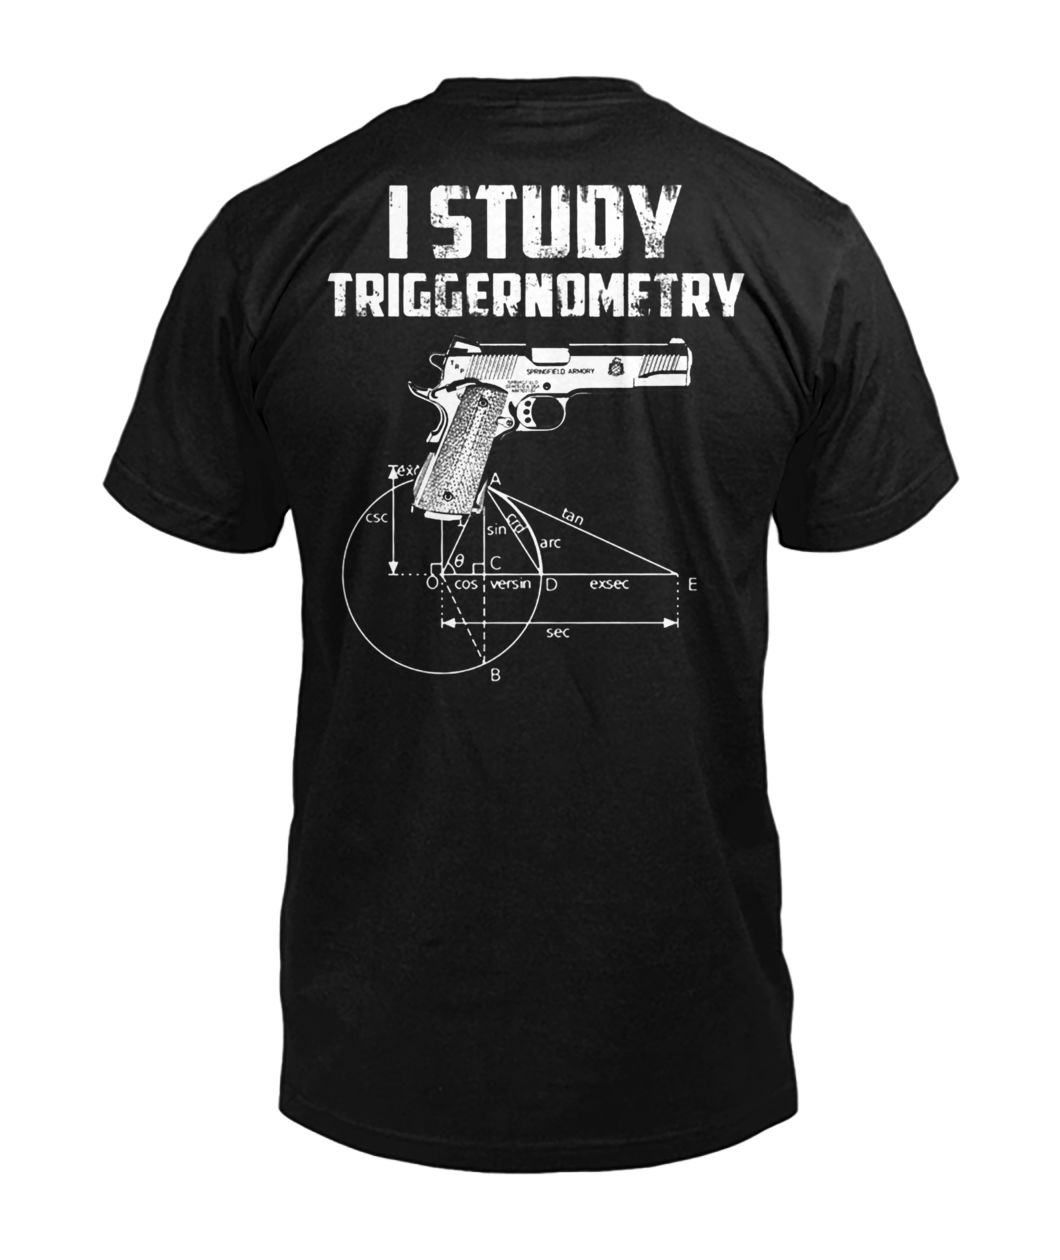 I study triggernometry mens v-neck